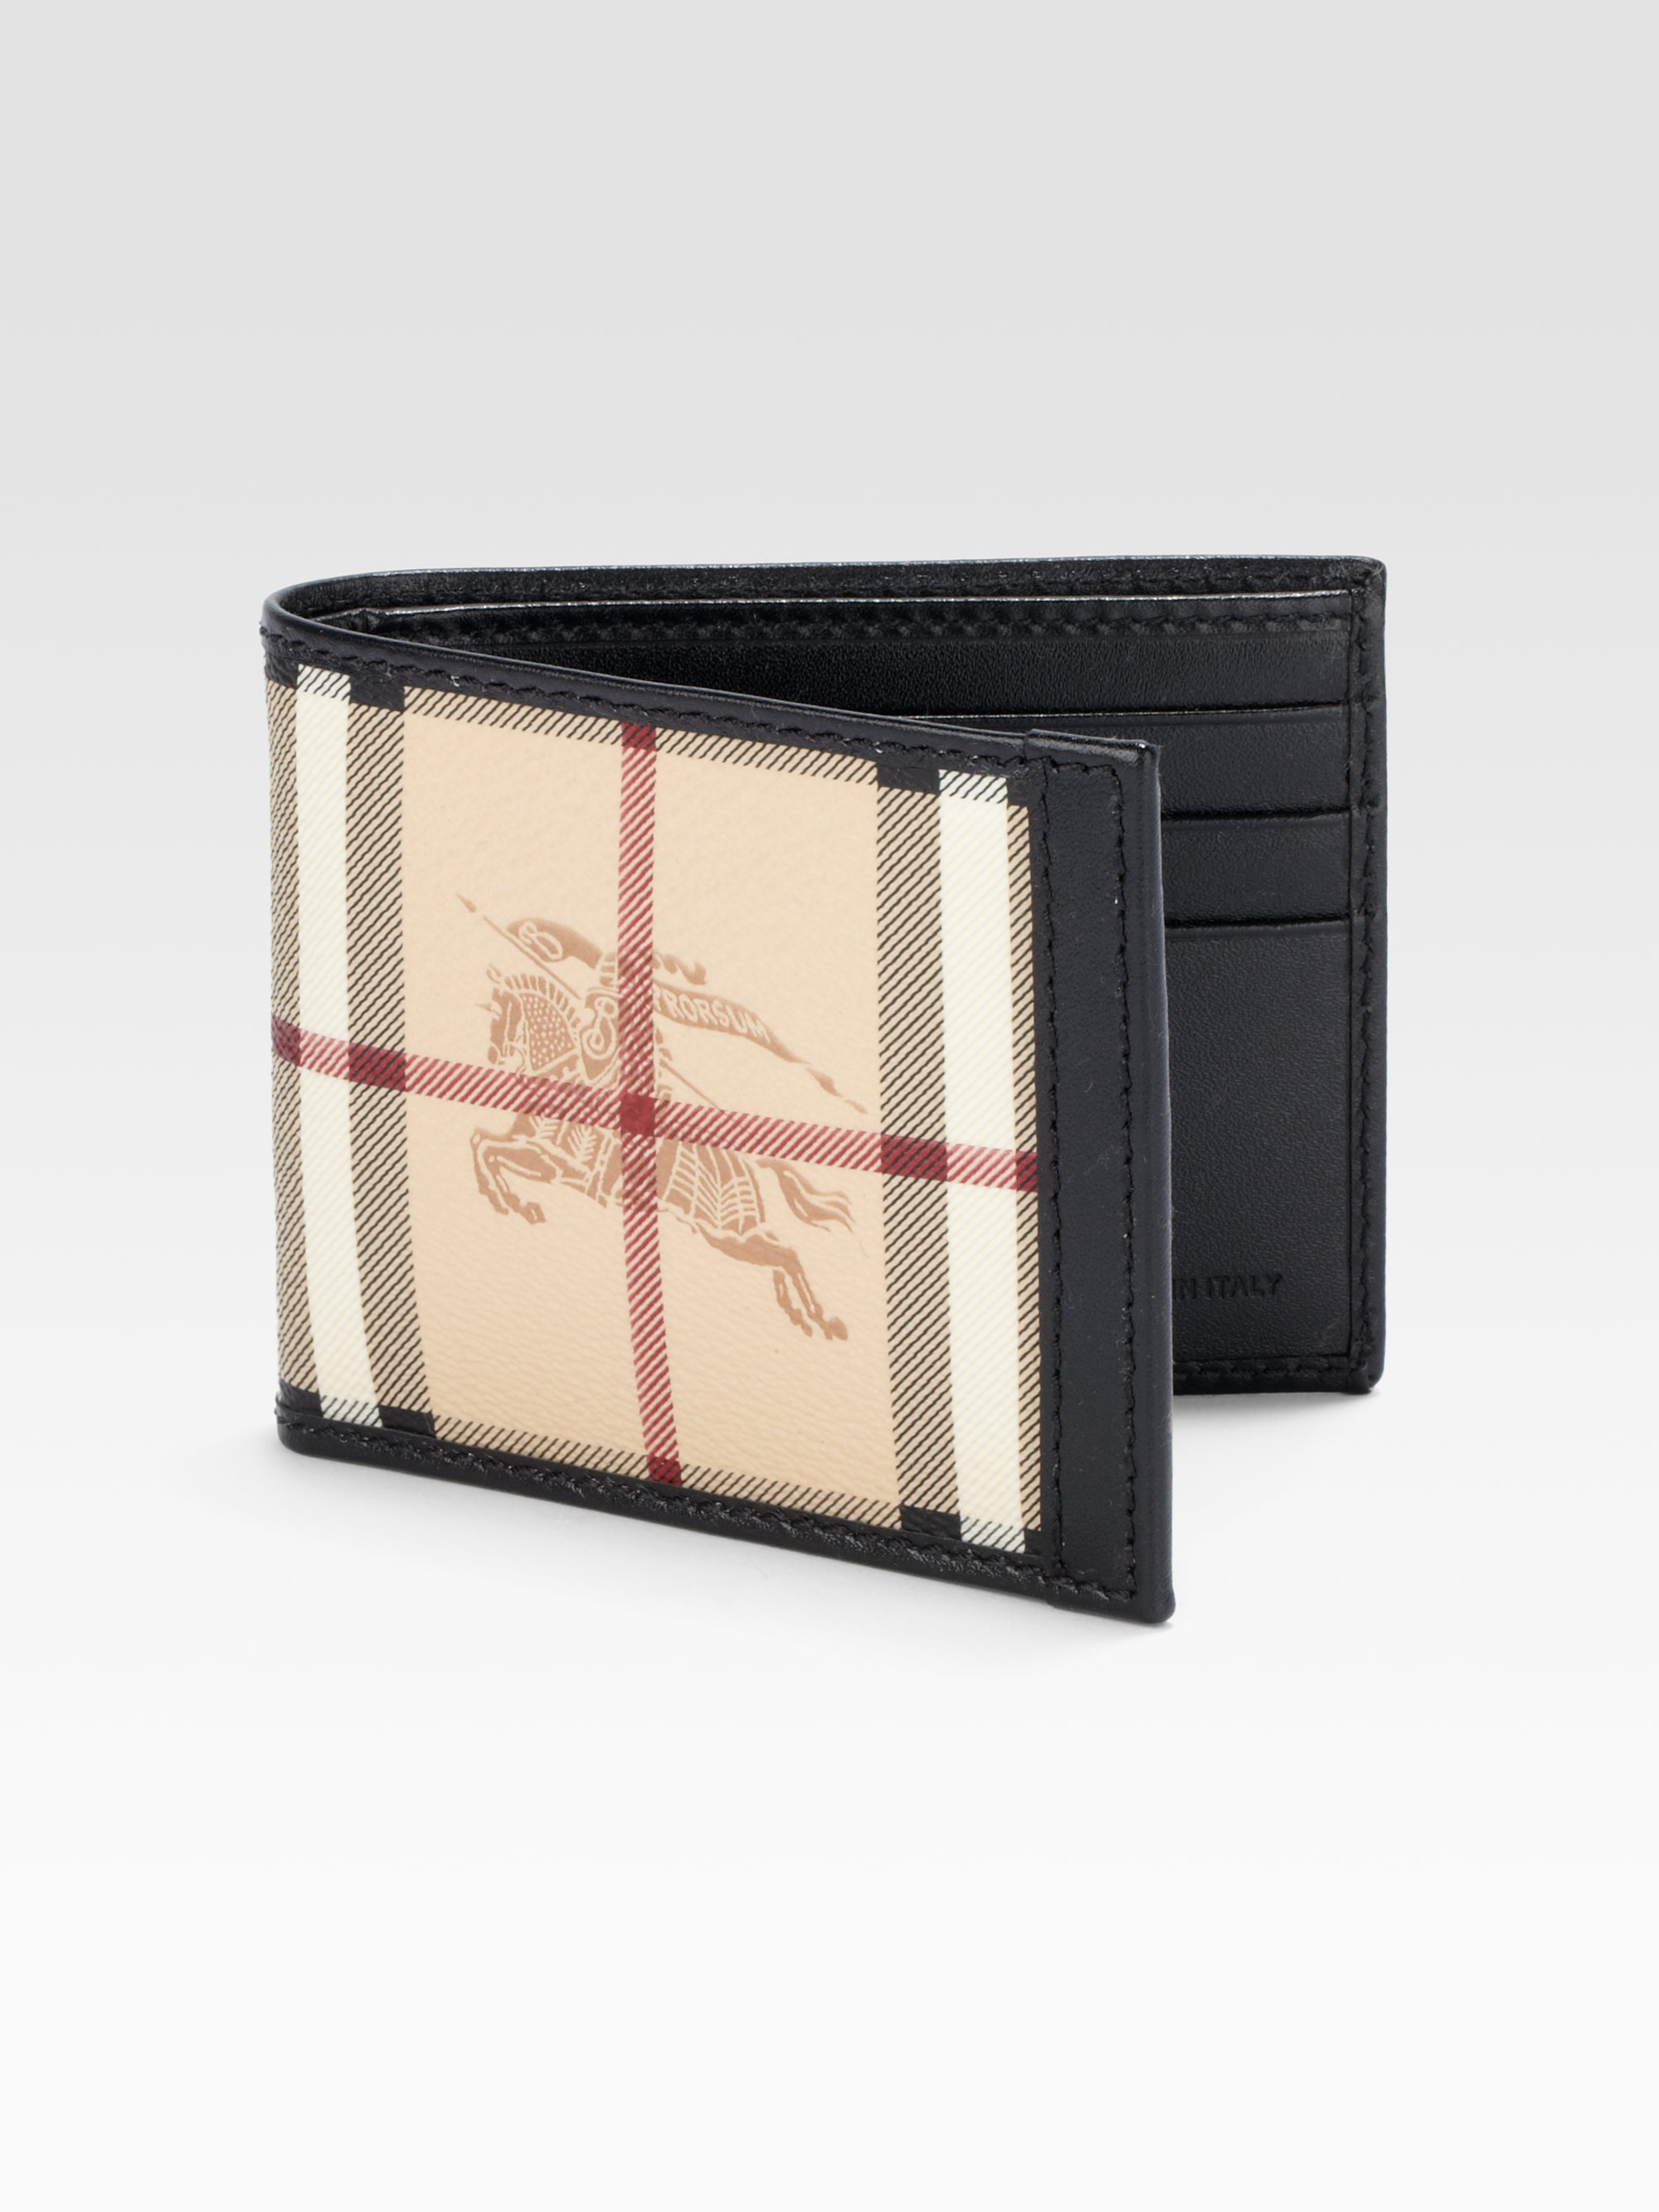 Burberry Leather Haymarket Bill Fold Wallet in Black for Men - Lyst